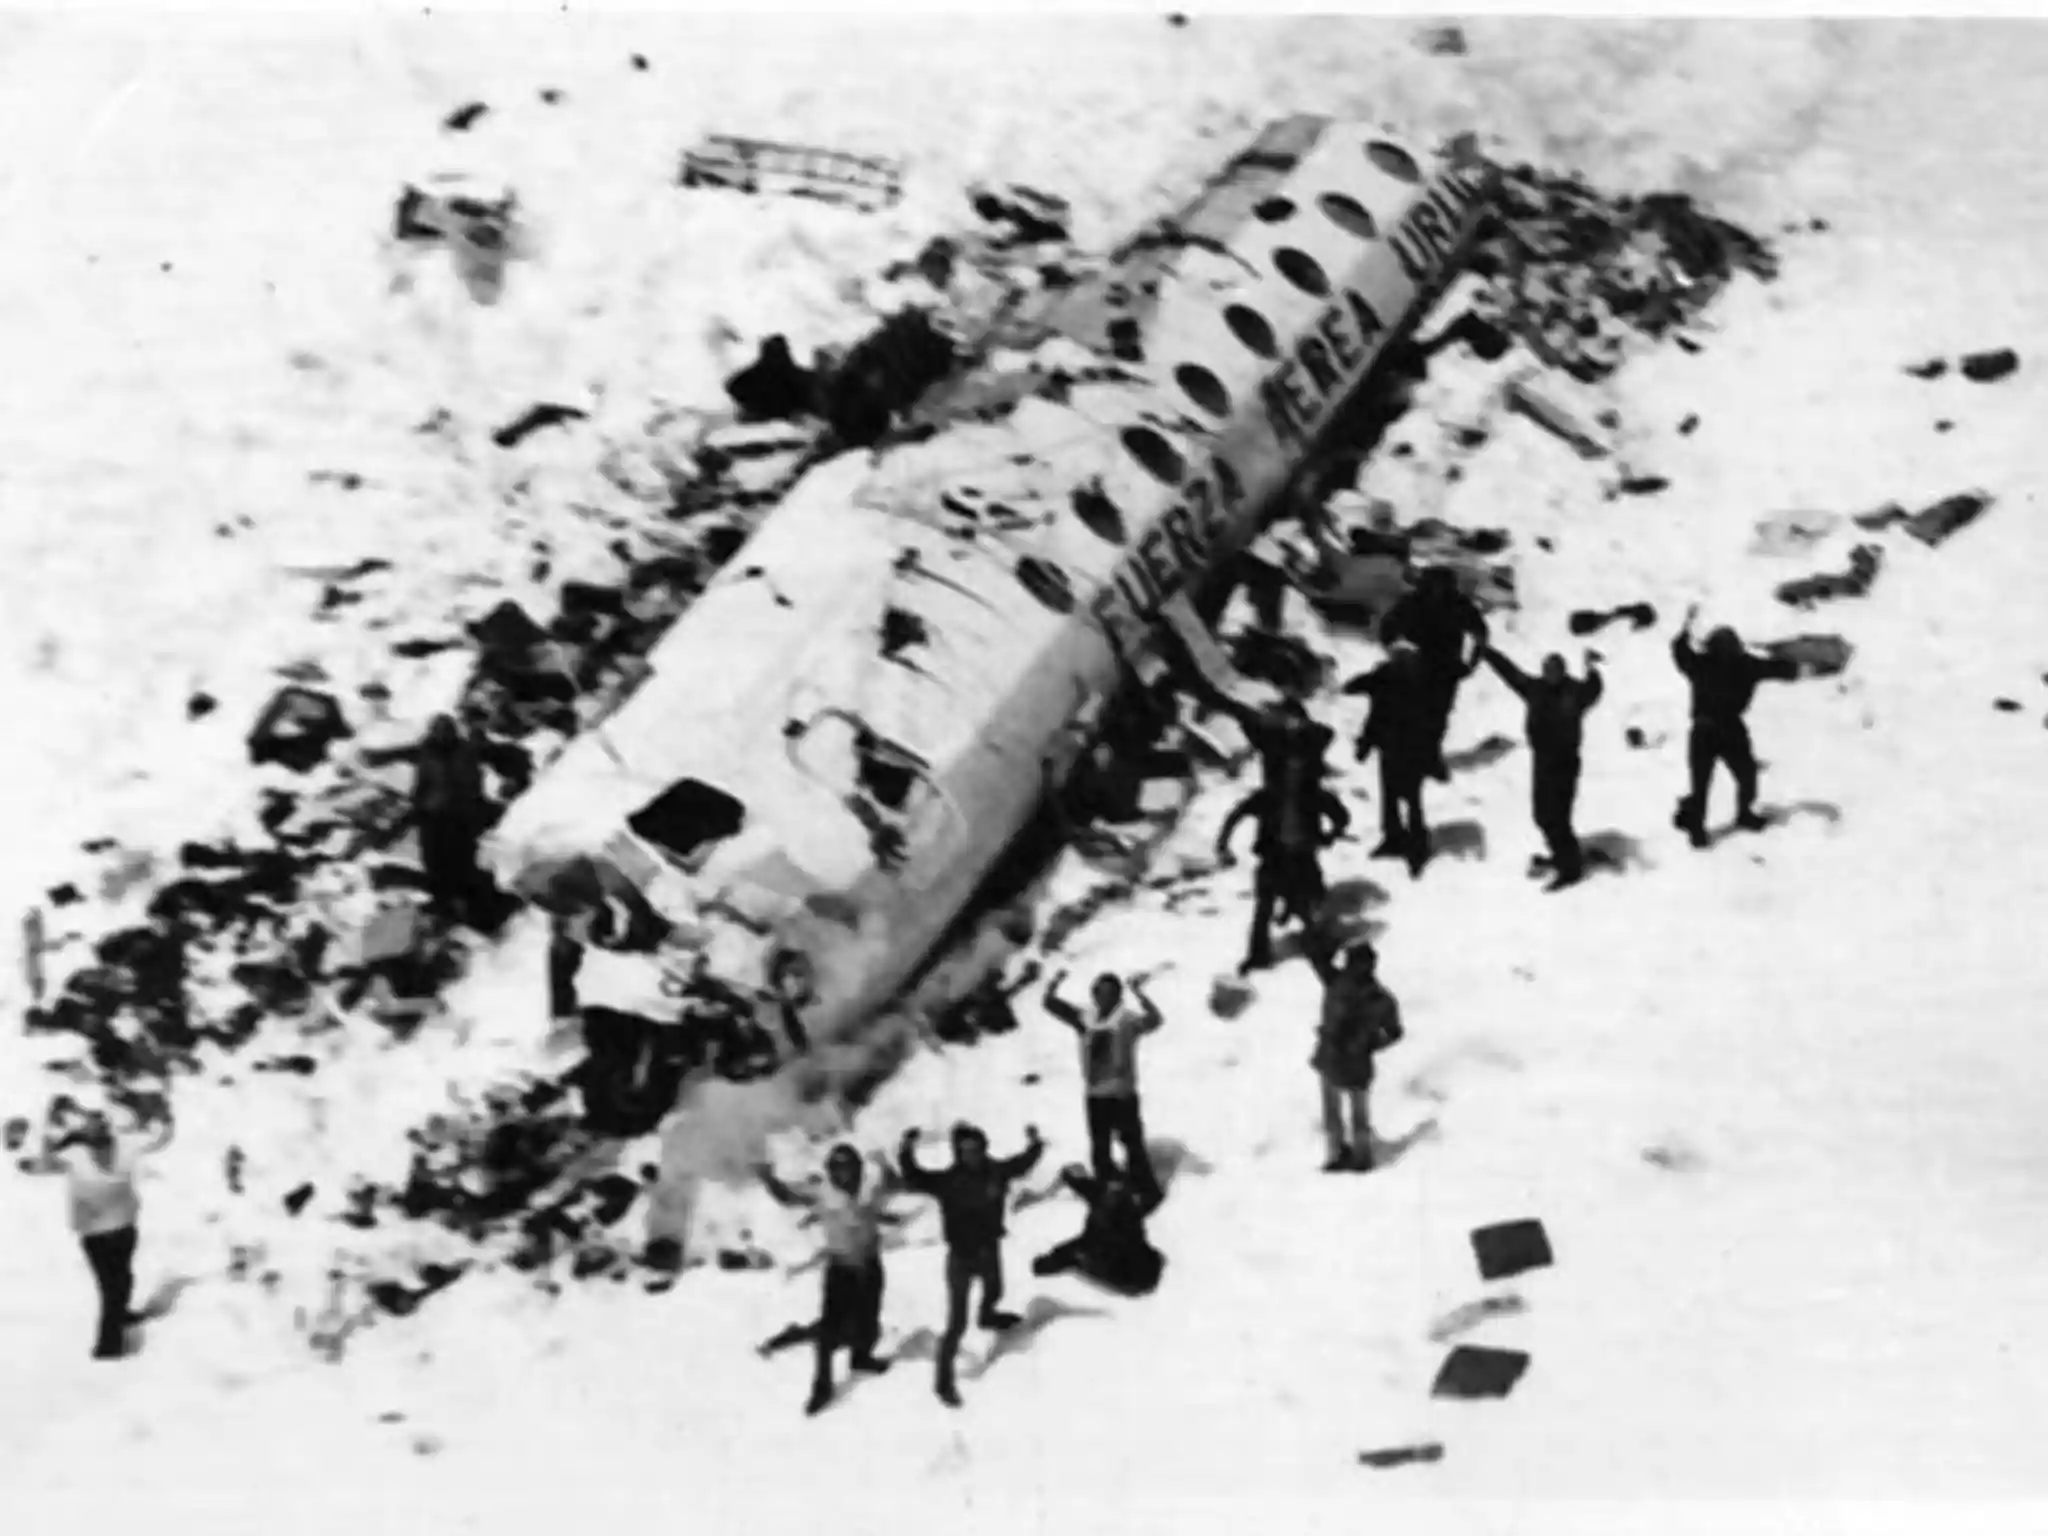 داستان عجیب و واقعی سقوط پرواز تیم راگبی اروگوئه سال 1972